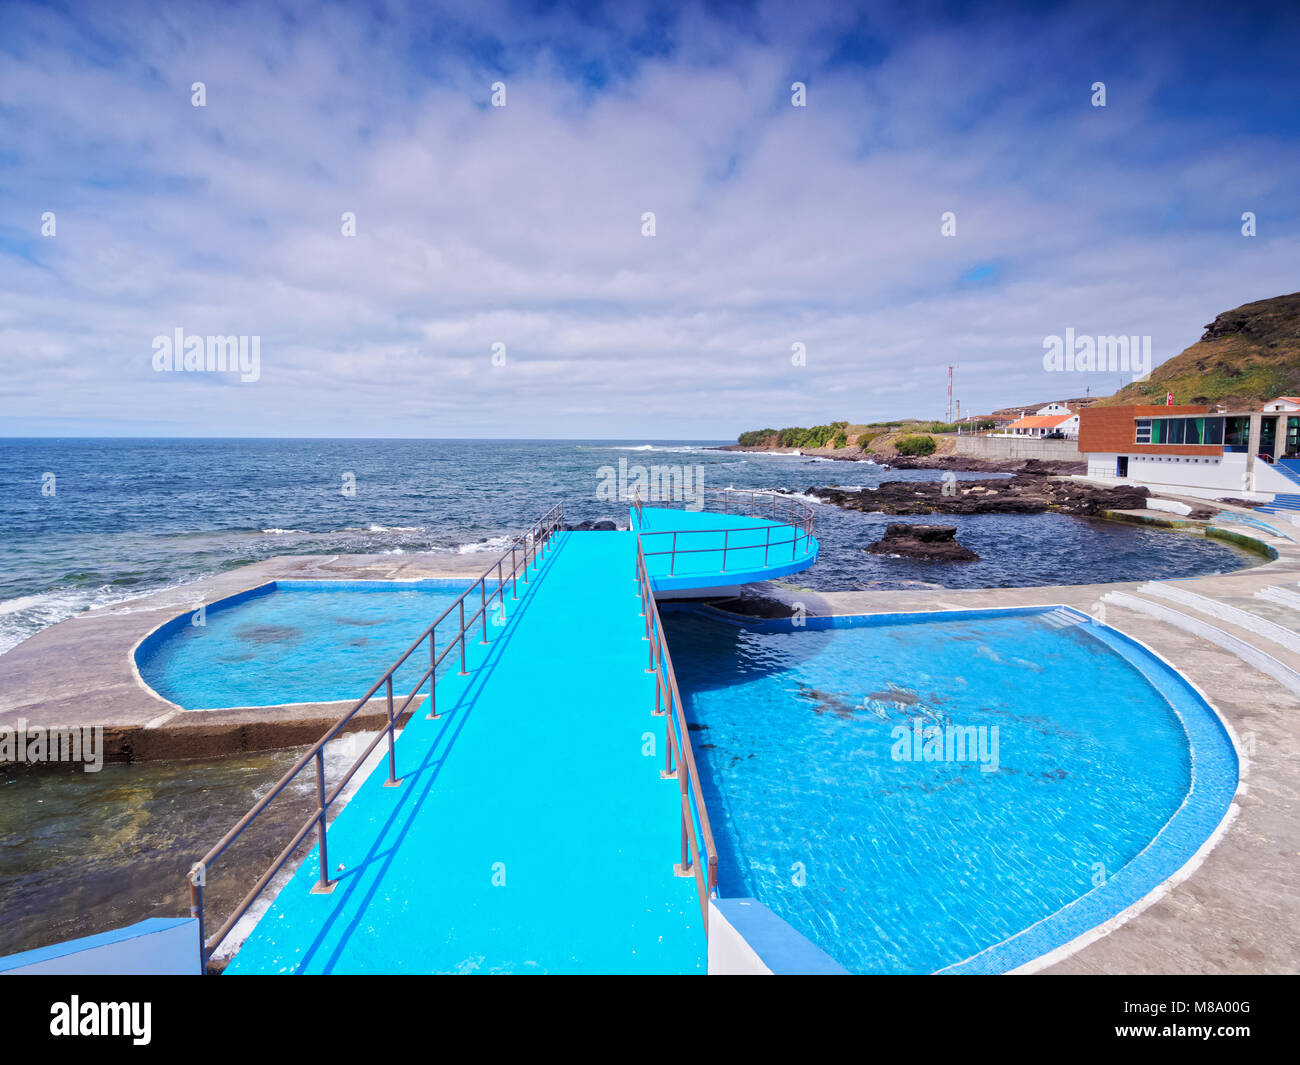 Anjos piscines, l'île de Santa Maria, Açores, Portugal Banque D'Images